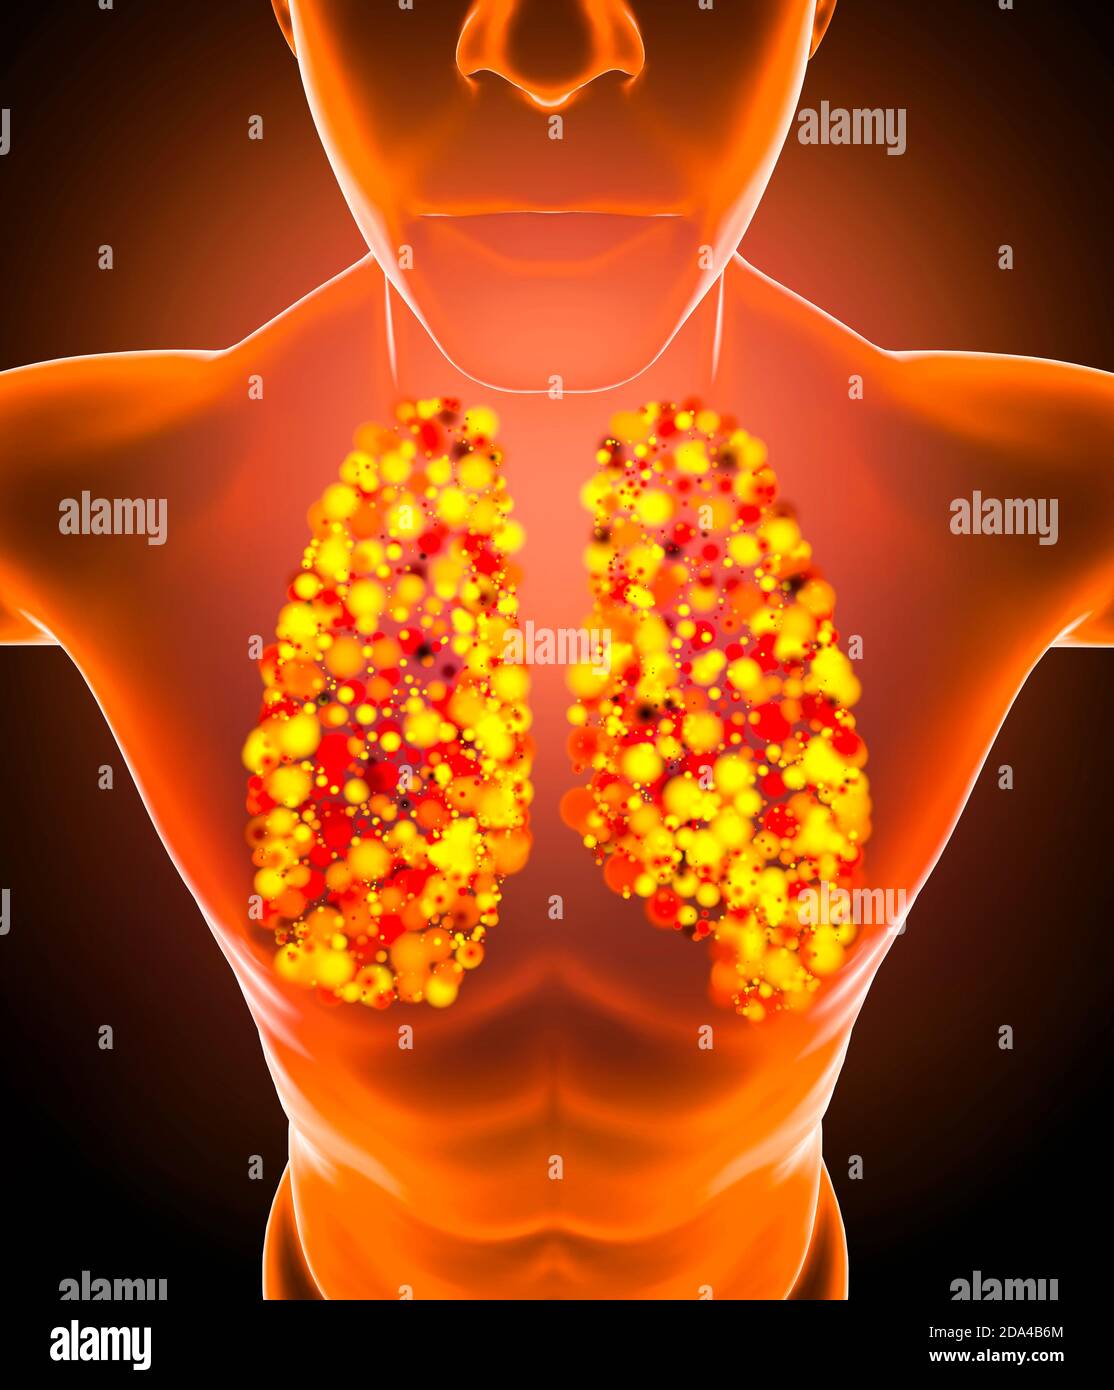 Anatomia umana, problemi con il sistema respiratorio, polmoni gravemente danneggiati. Polmonite bilaterale. Covid-19, coronavirus. Paziente e fumo. Fumatore. 3d Foto Stock